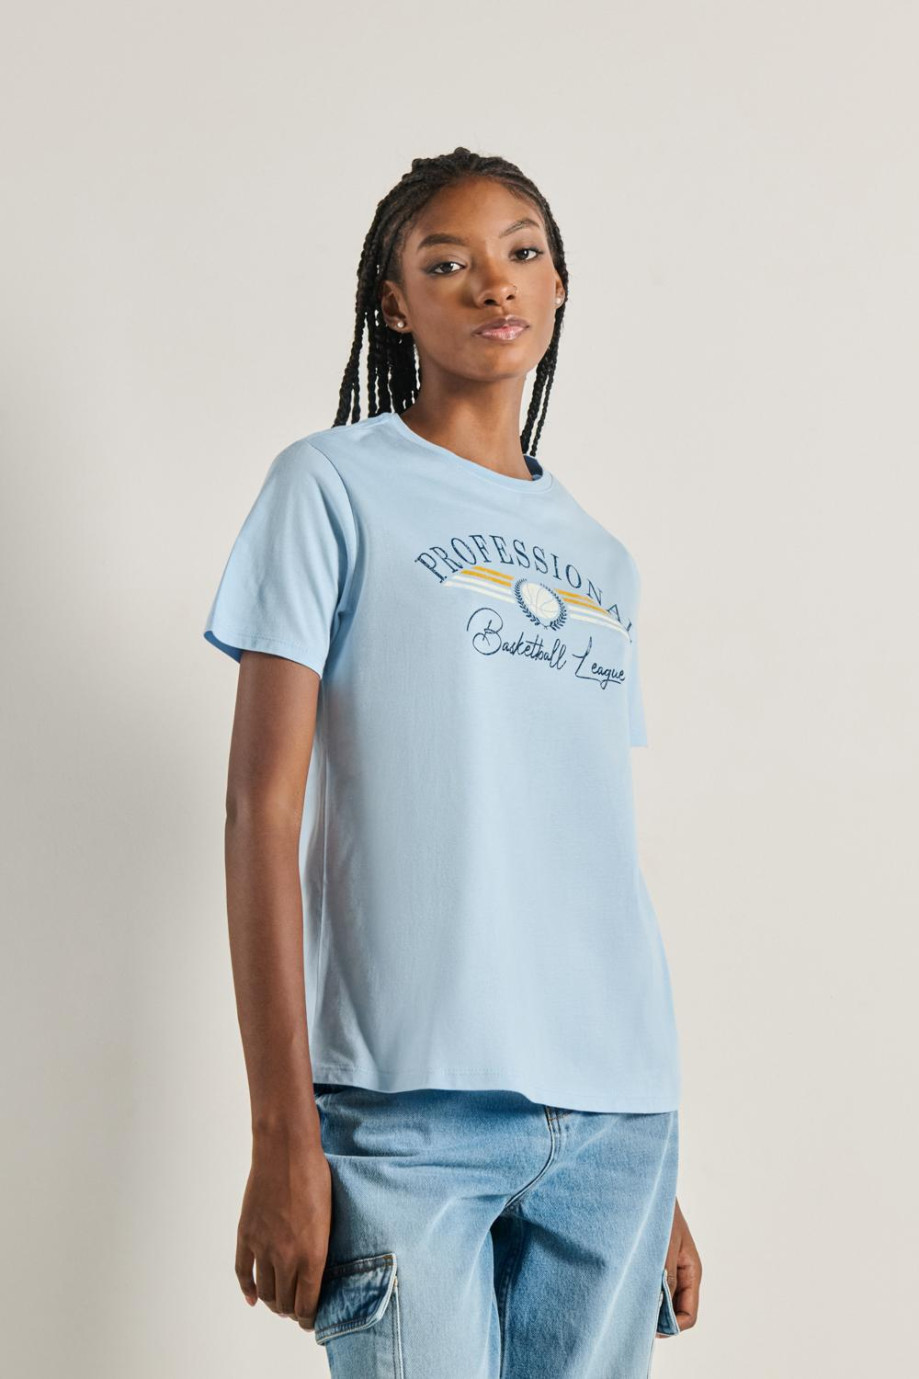 Camiseta para mujer manga corta azul claro con estampado en frente estilo College.